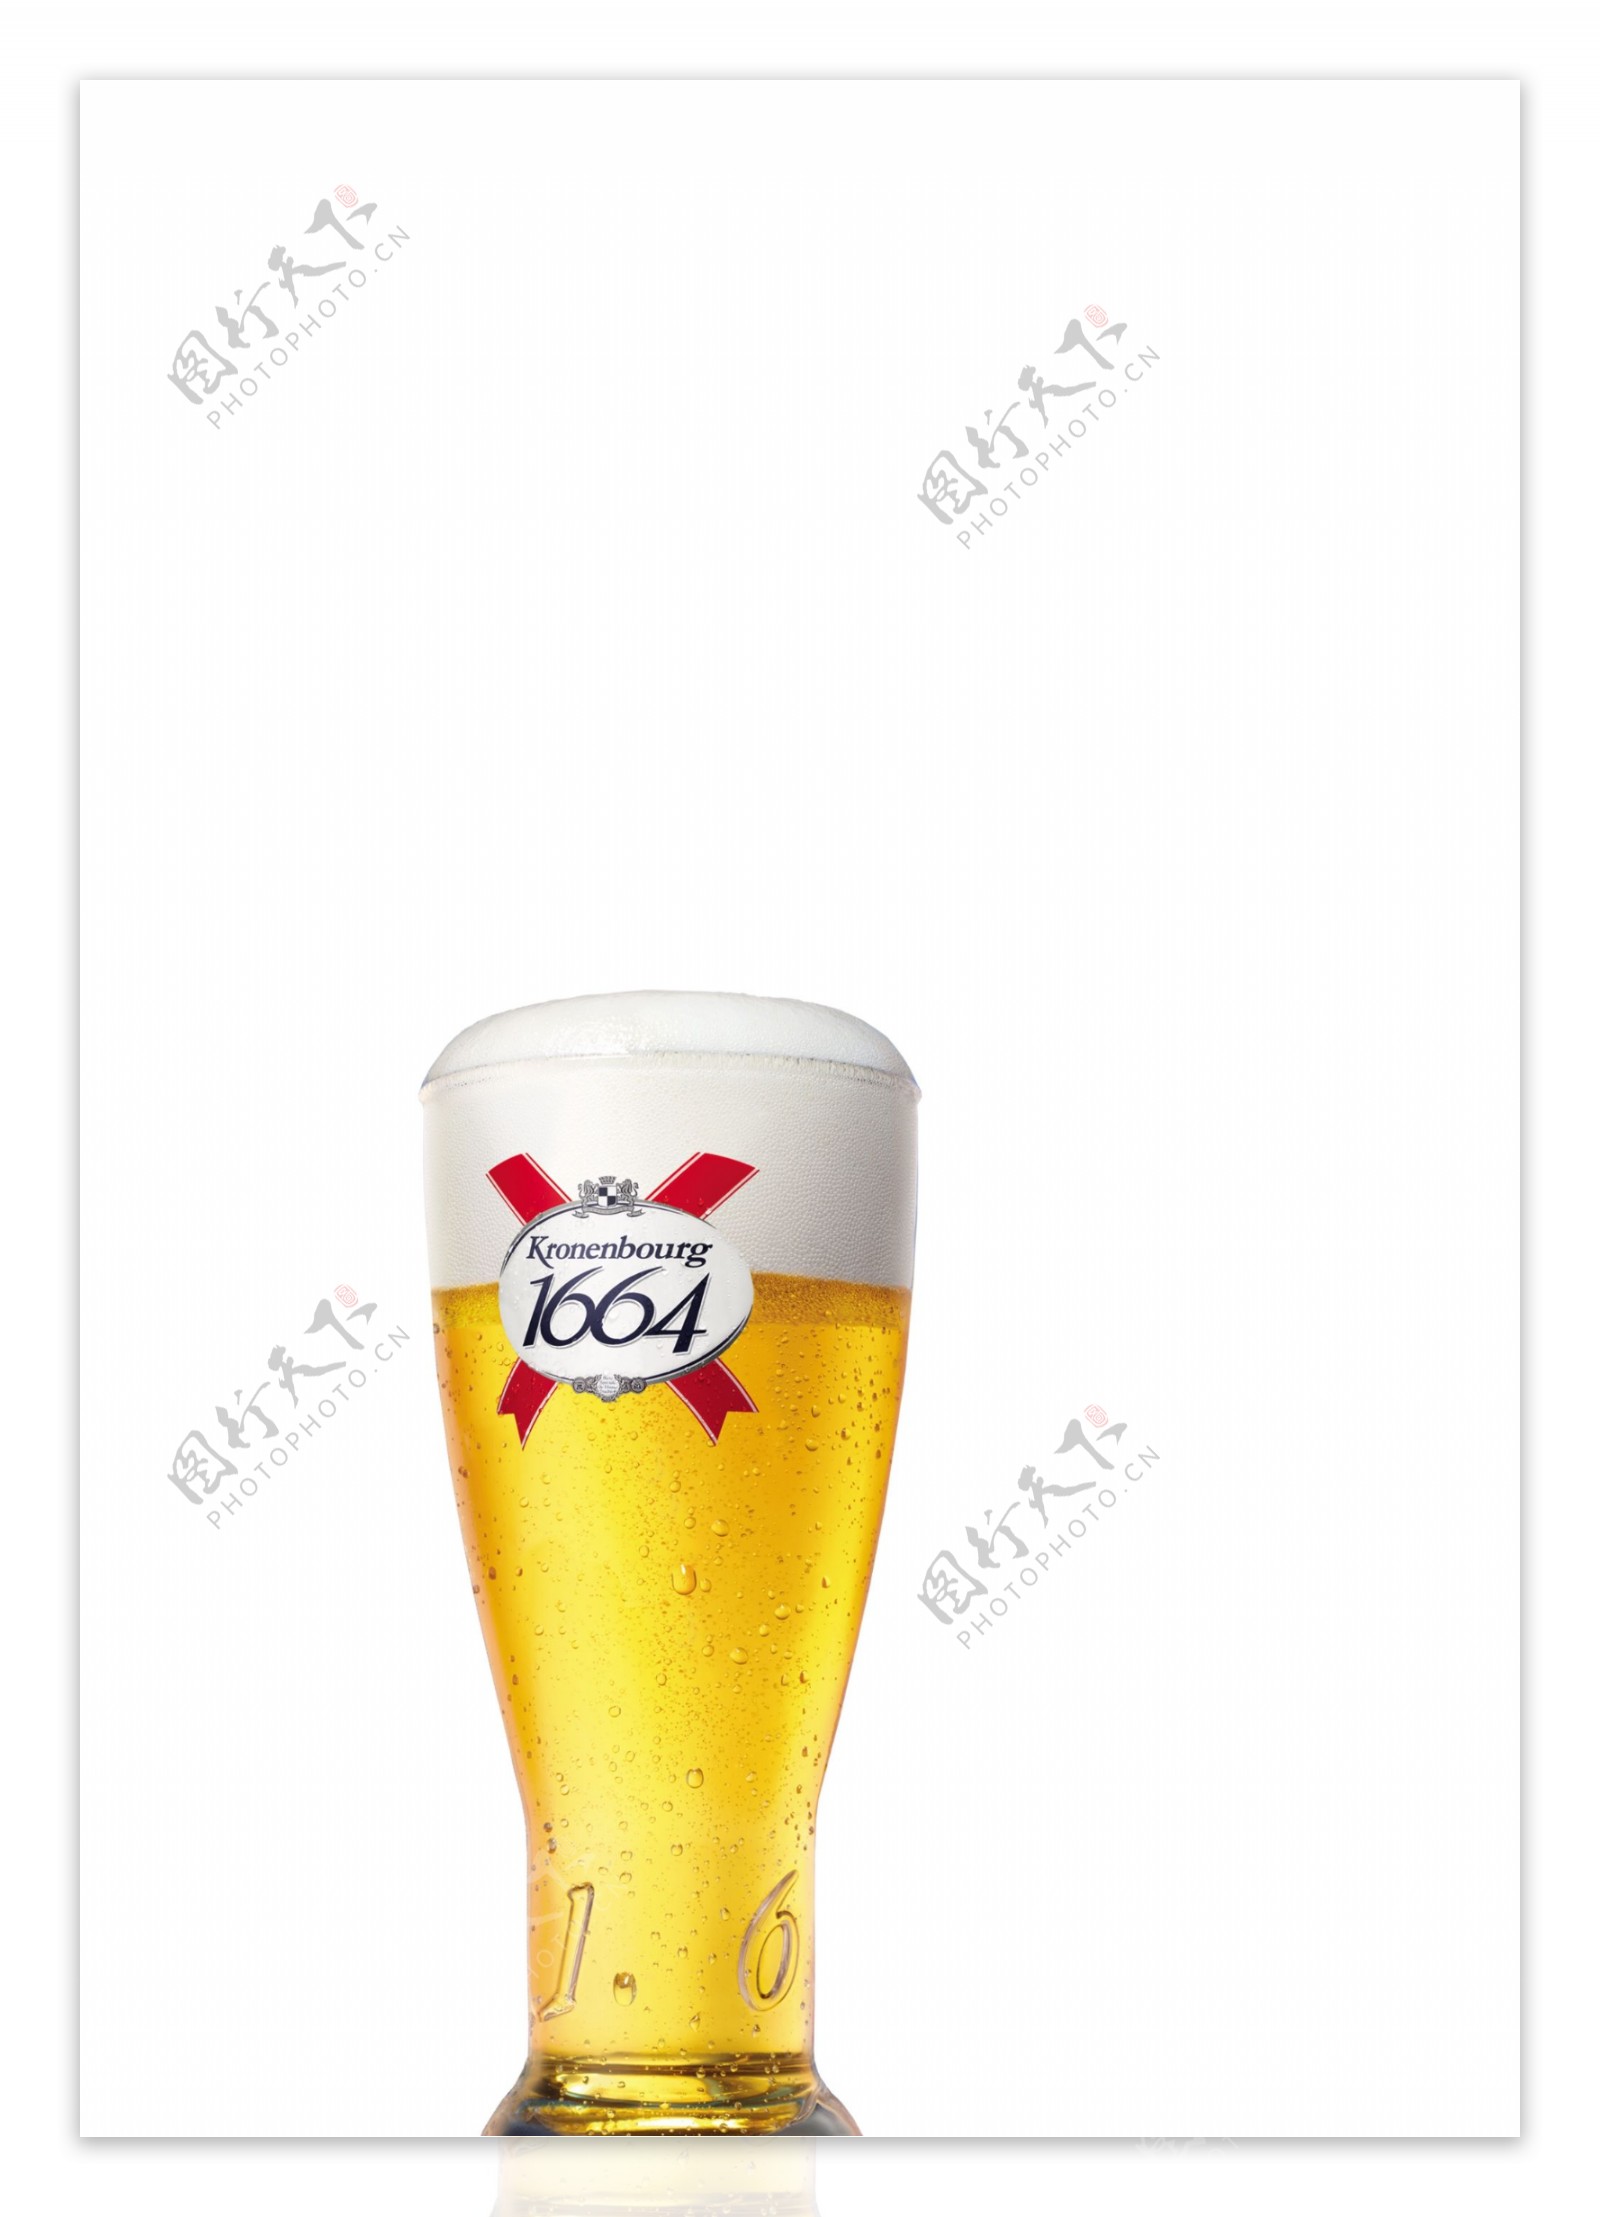 法国166啤酒广告